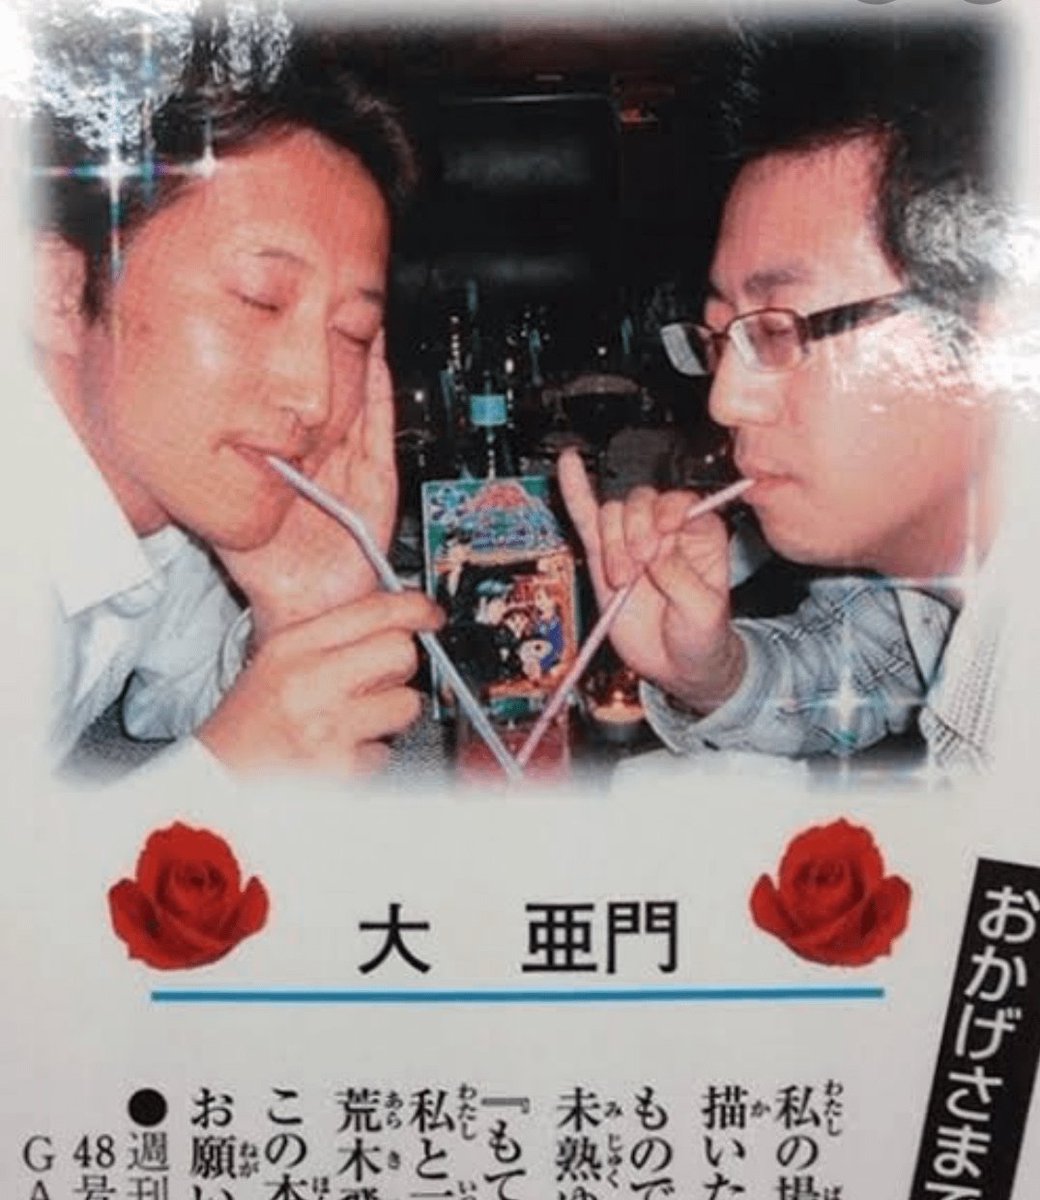 Recordando una ocurrencia de Toriyama. Me hace feliz la fotografía donde compartía una malteada con Hirohiko Araki (Autor de Jojo's)